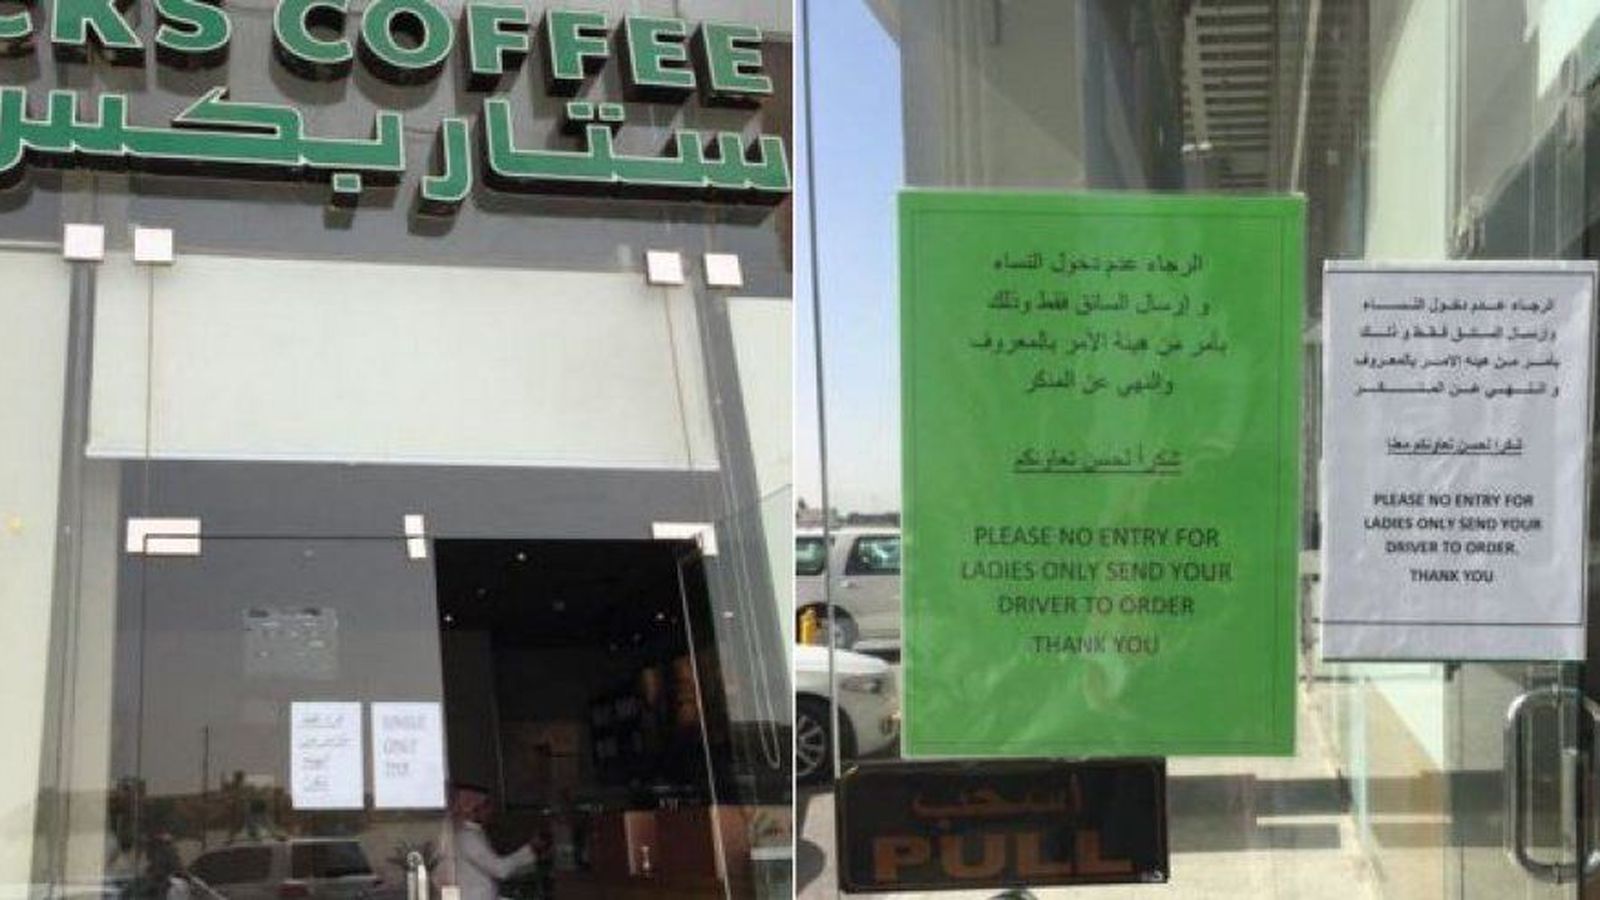 Foto: El cartel que cuelga del Starbucks de Riad prohíbe la entrada a las mujeres. (Twitter)